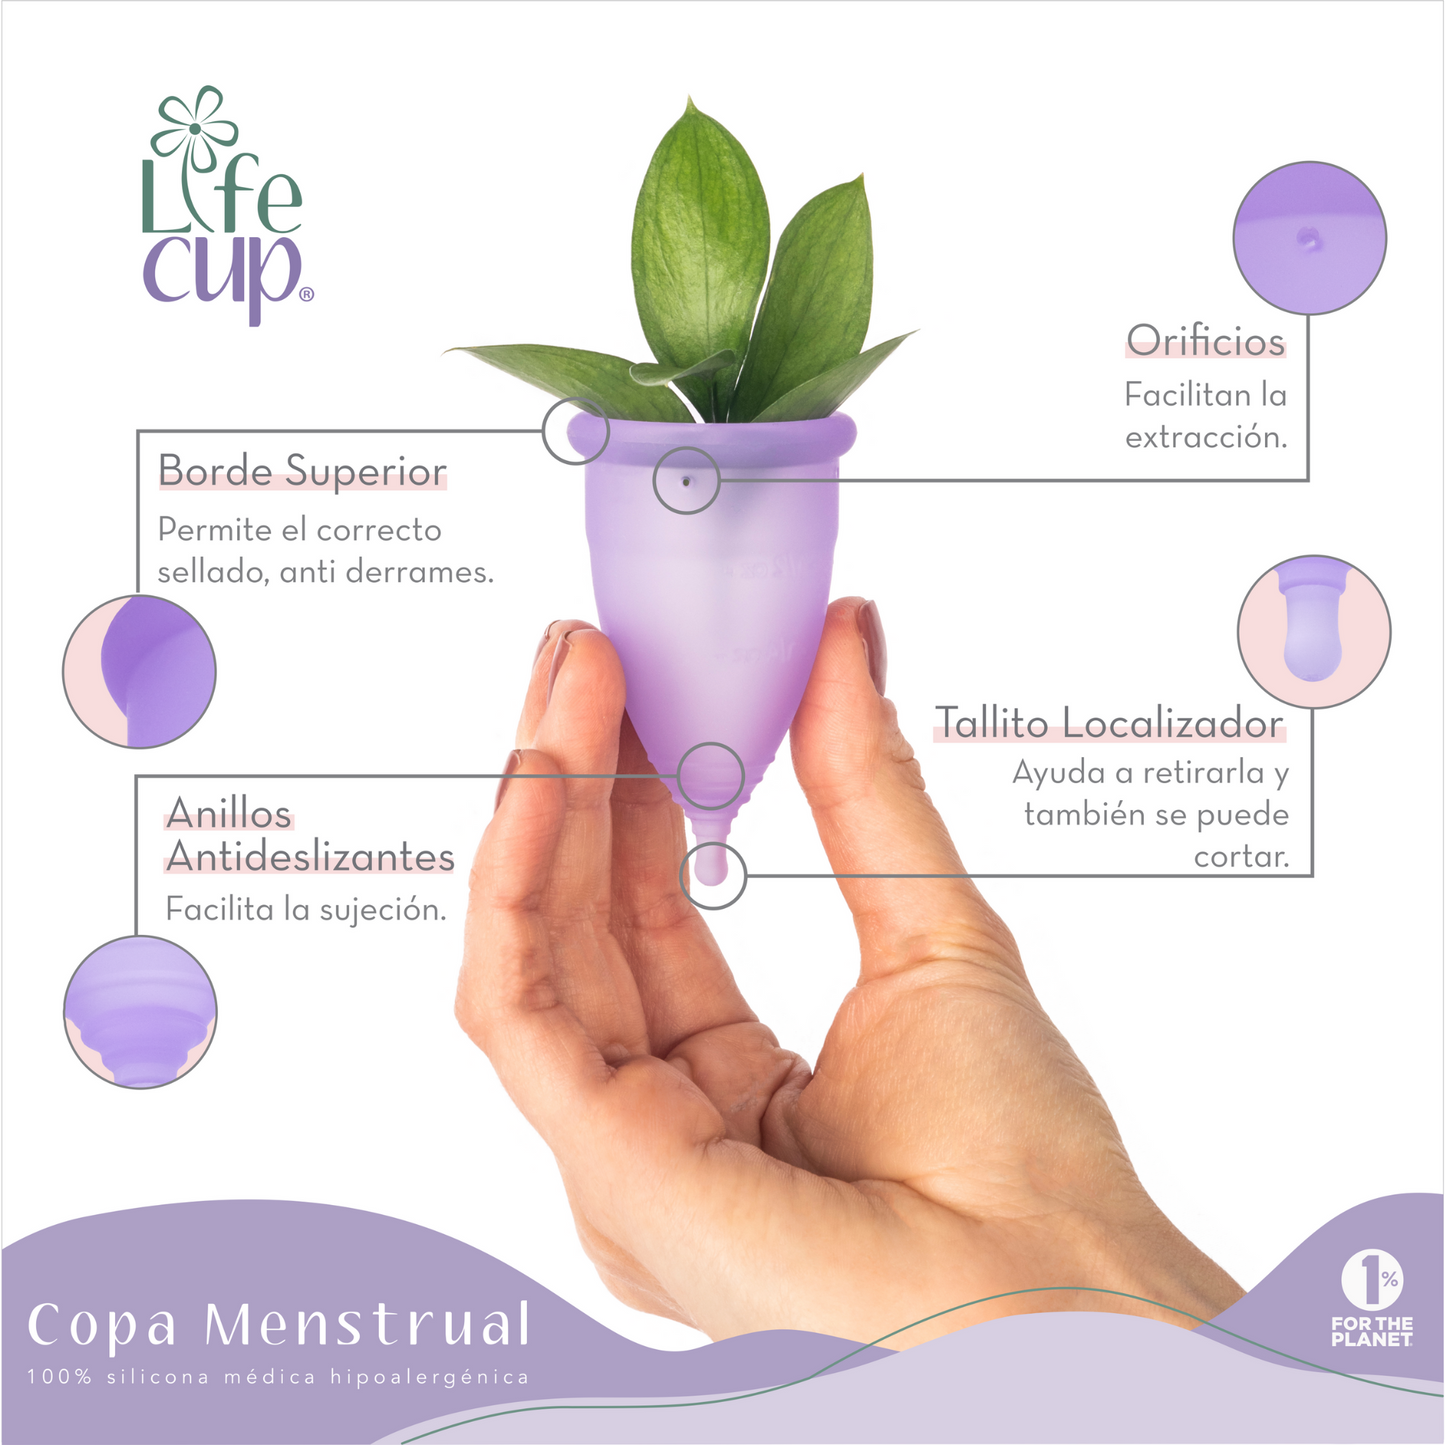 Copa menstrual LifeCup - La Tortuga y La Liebre